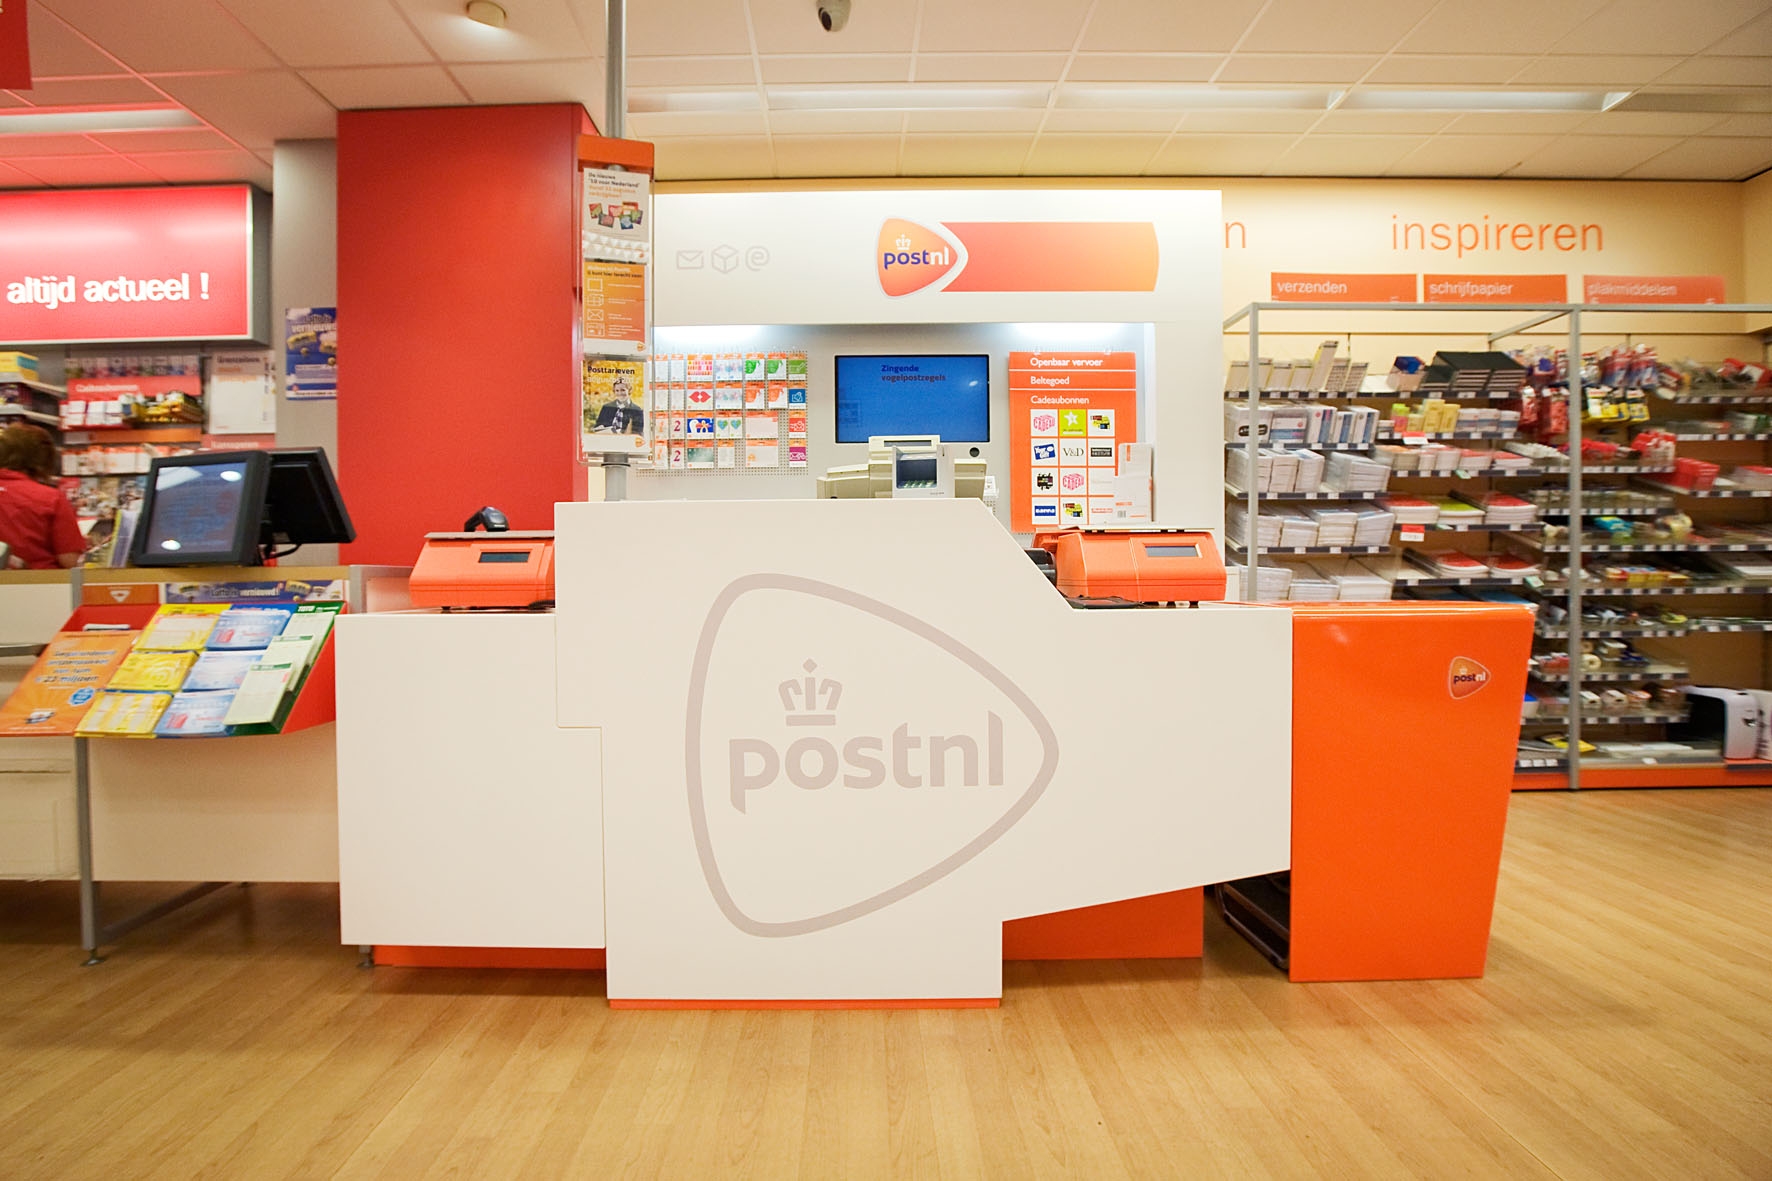 kiespijn Aanhankelijk nikkel PostNL-retailers verliezen kort geding over vergoeding - Emerce